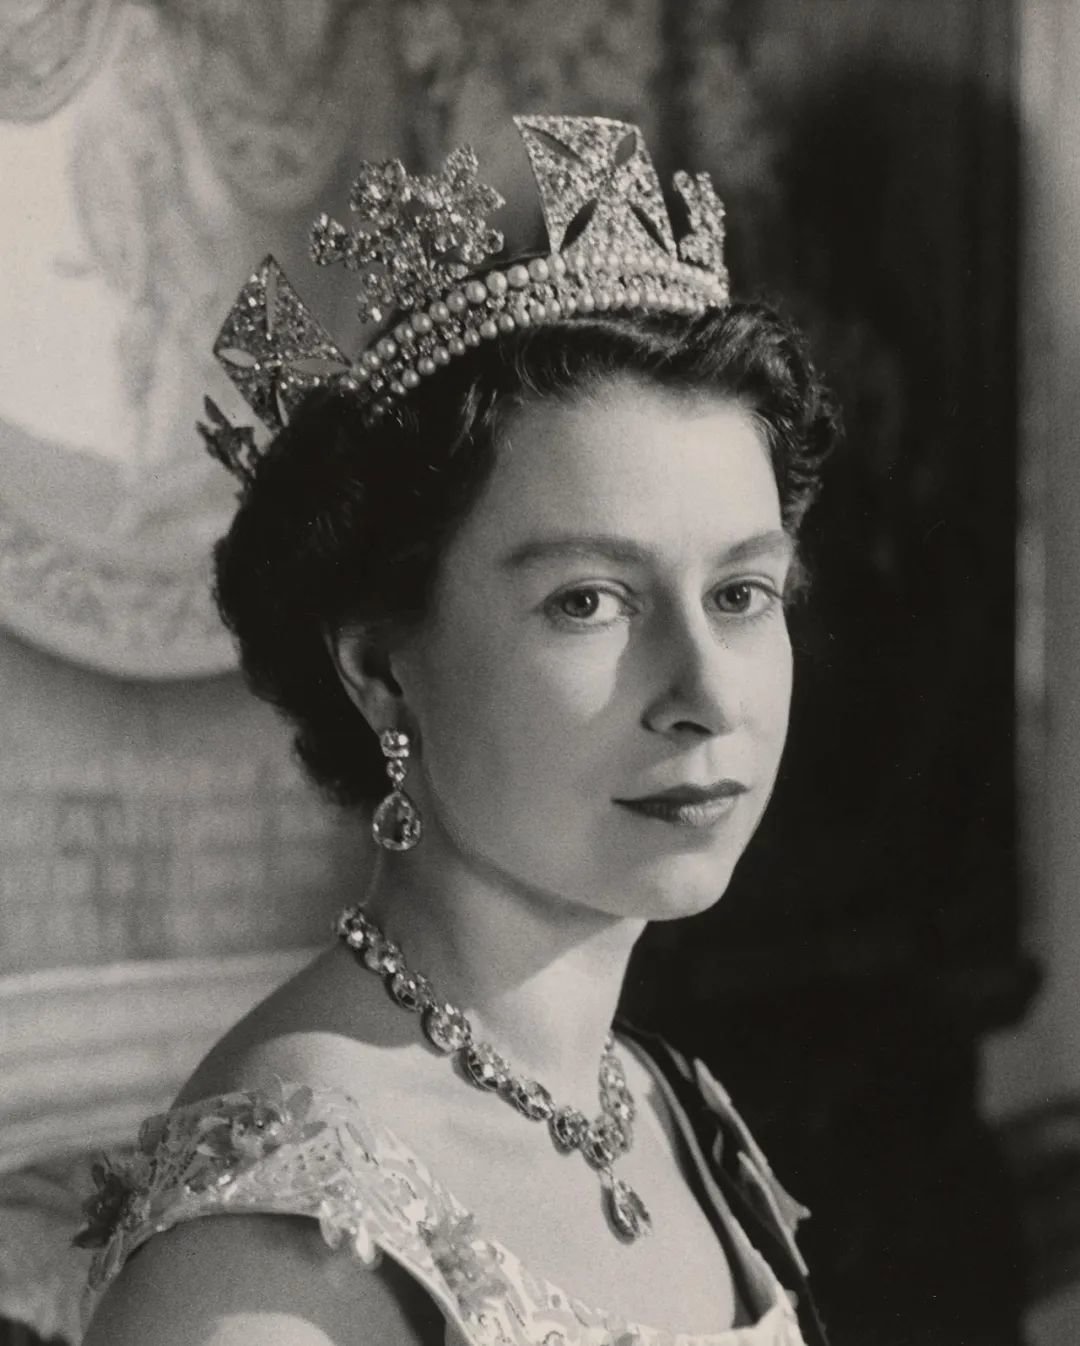 英女王在位70年 見證英國及王室變遷 - RTHK